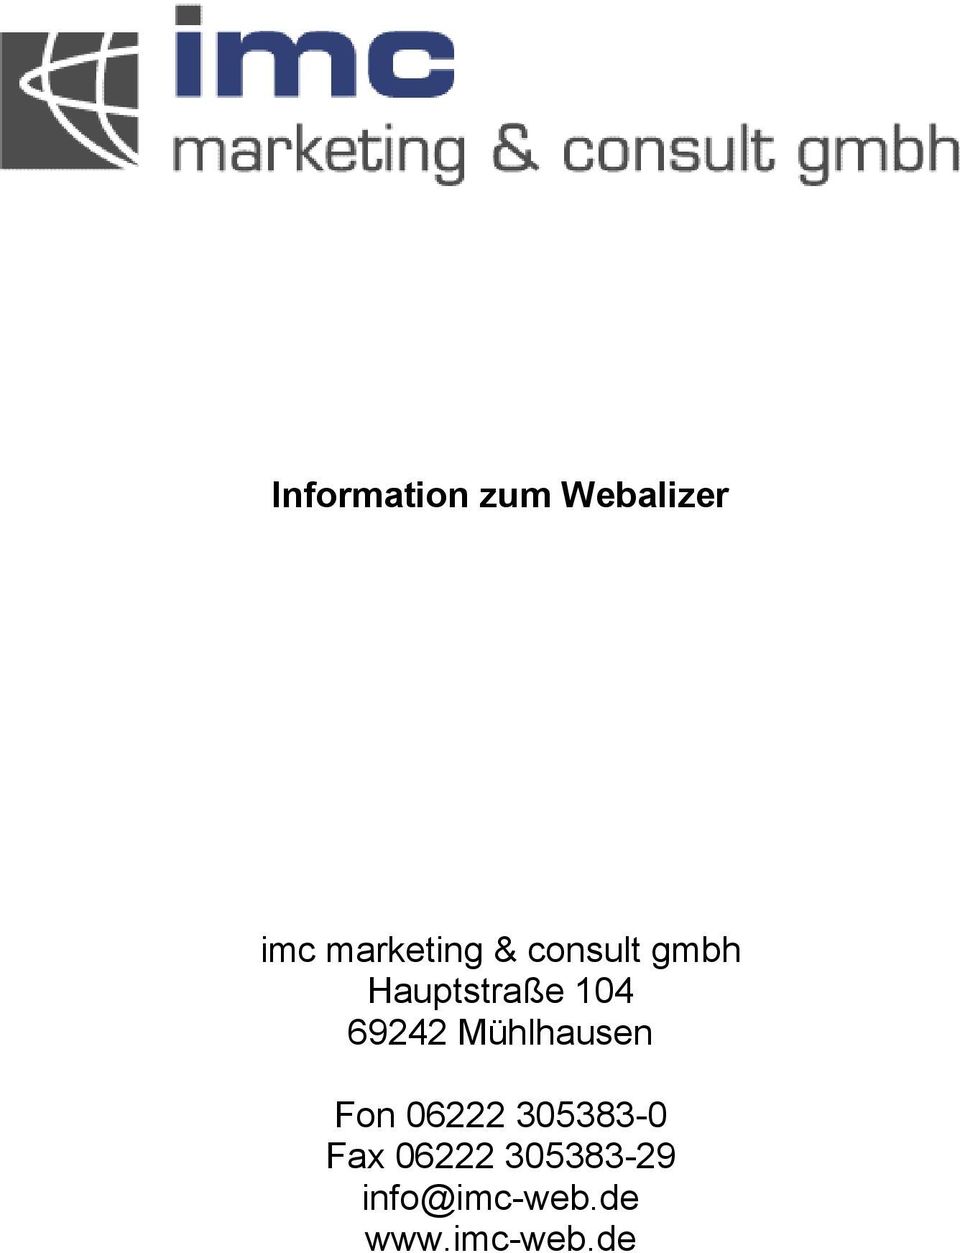 Mühlhausen Fon 06222 305383-0 Fax 06222